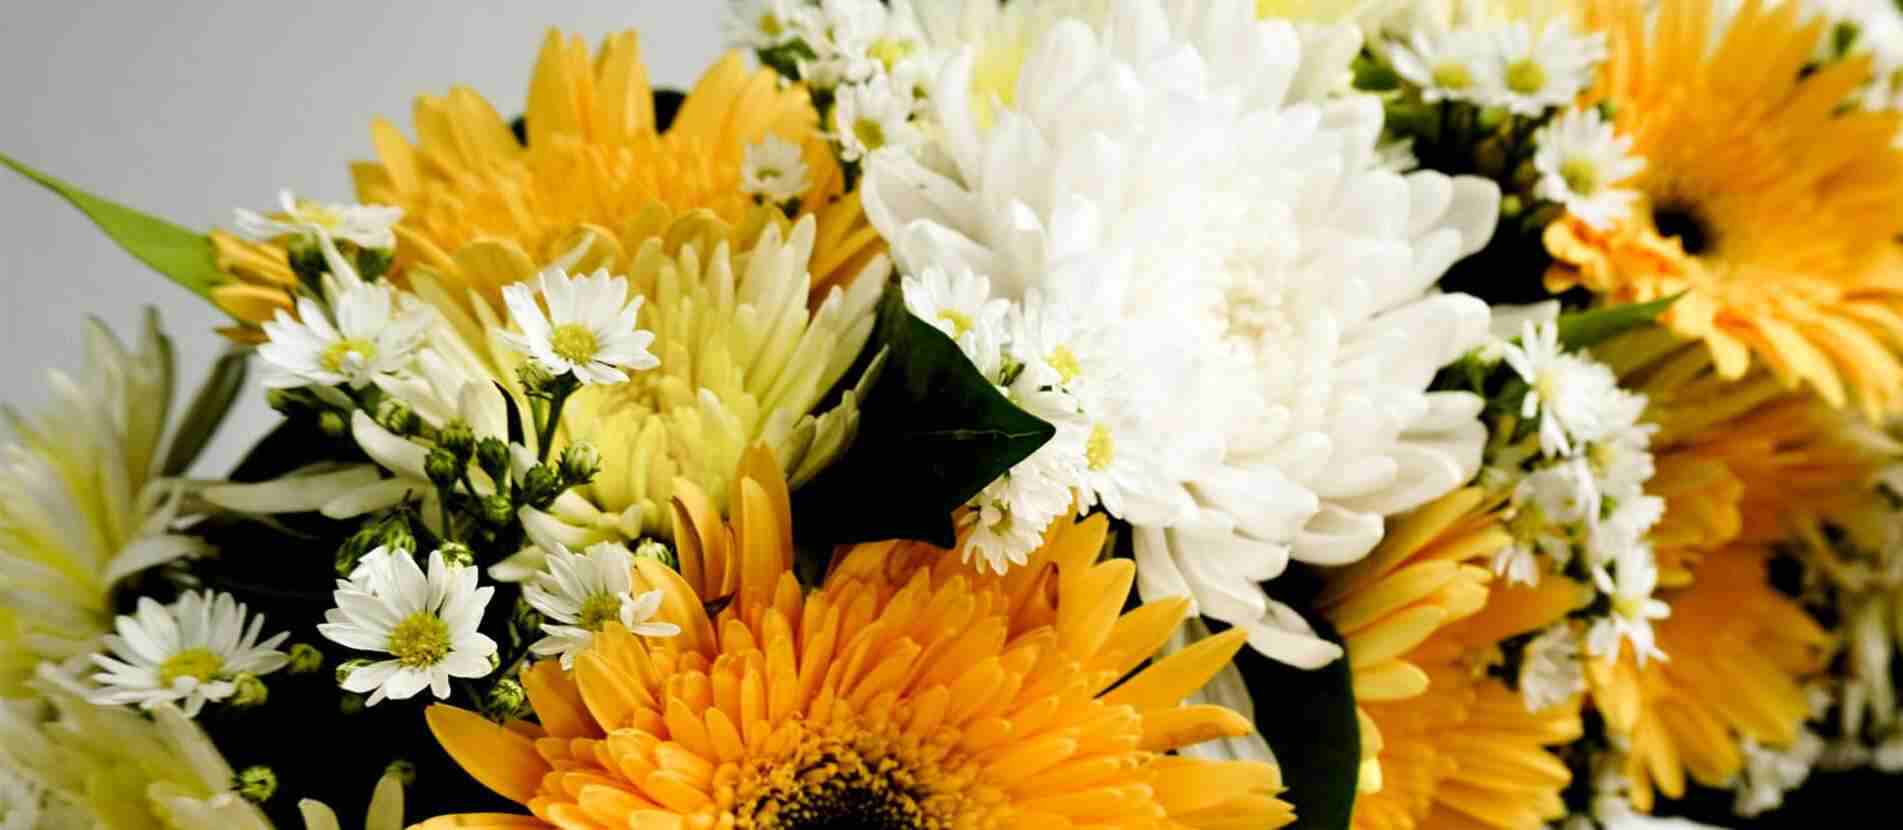 ดอกไม้สีขาวและสีส้มแซมด้วยดอกไม้ขนาดเล็กเป็นส่วนหนึ่งของพวงหรีดดอกไม้ที่จัดวางอย่างมีศิลปะและสวยงาม